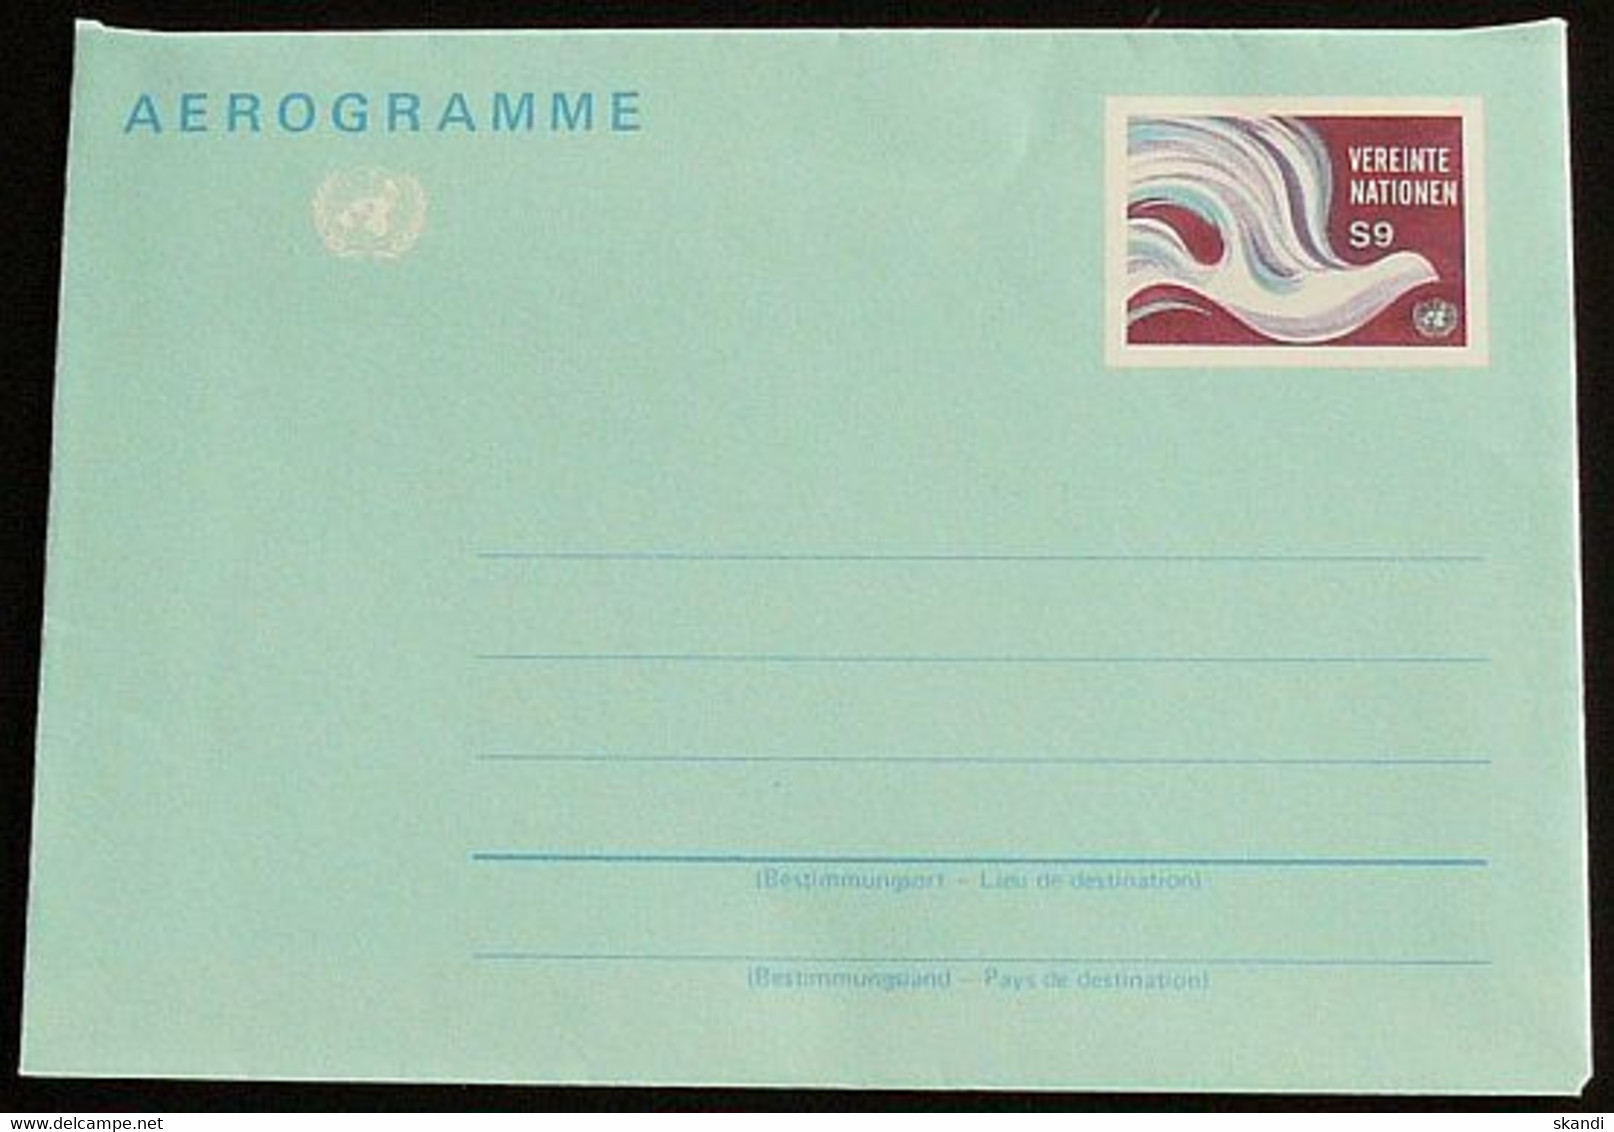 UNO WIEN 1994 Mi-Nr. LF 1 Luftpostfaltbrief Aerogramme Ungebraucht - Briefe U. Dokumente